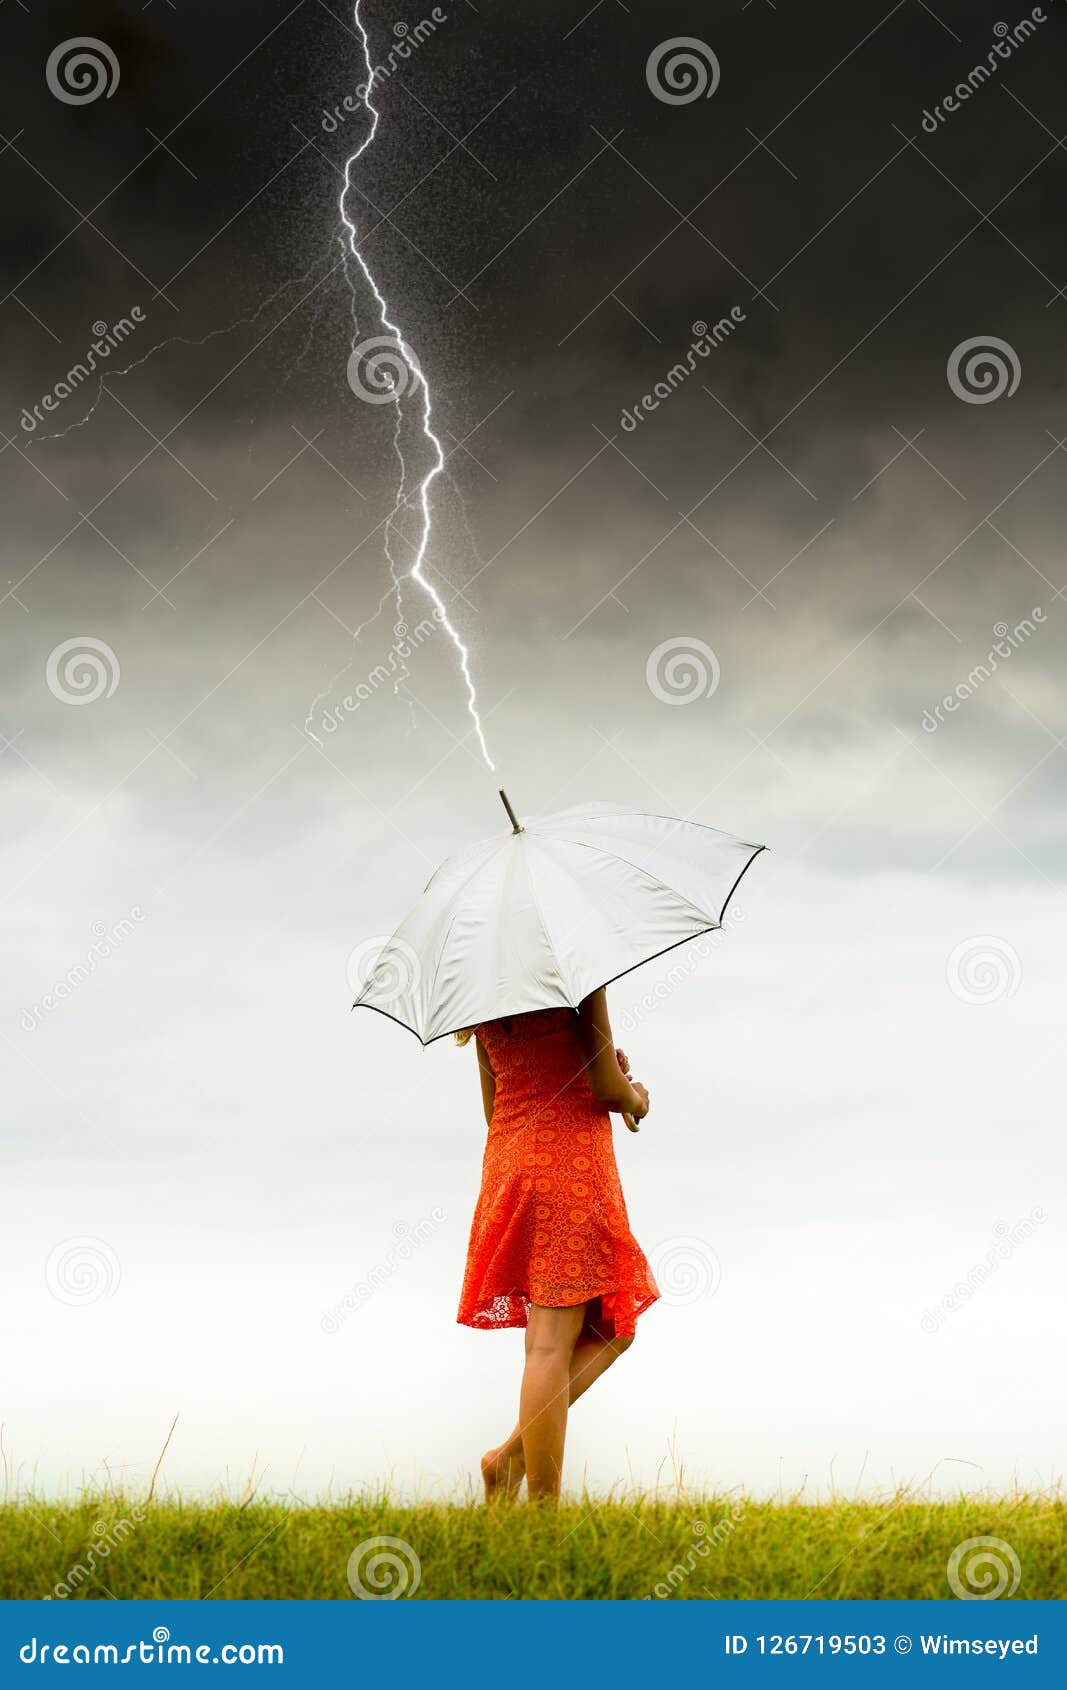 Madchen Mit Regenschirm Im Sturm Stockbild Bild Von Sturm Regenschirm